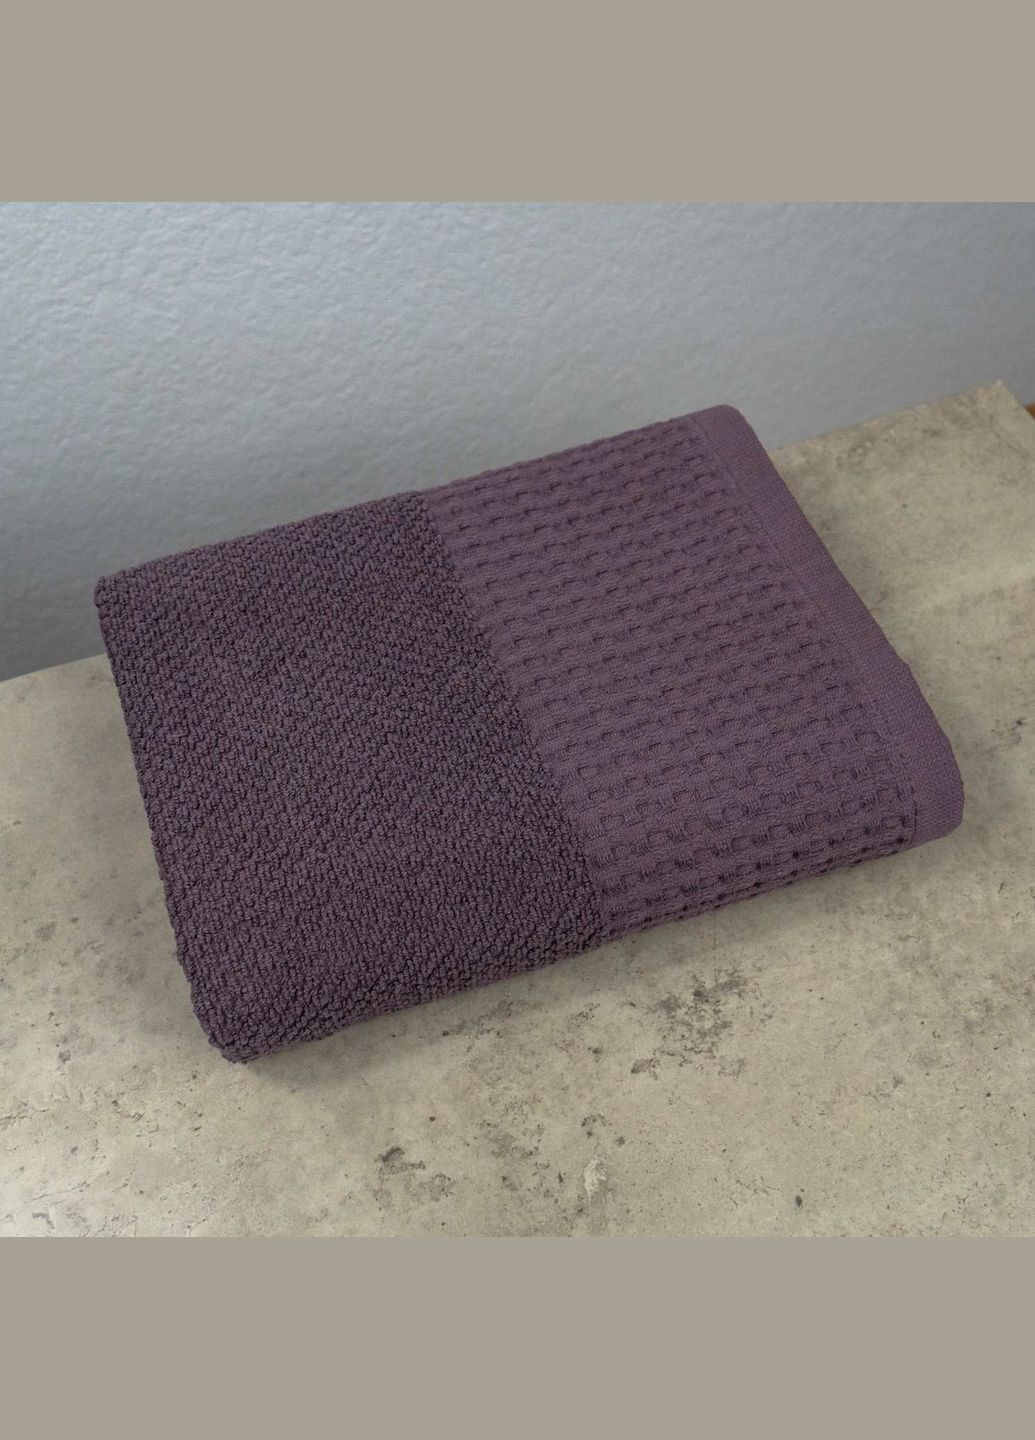 GM Textile комплект махровых полотенец вафельный бордюр 3шт 40х70см, 50х90см, 70х140см 500г/м2 (темный виноград) фиолетовый производство -